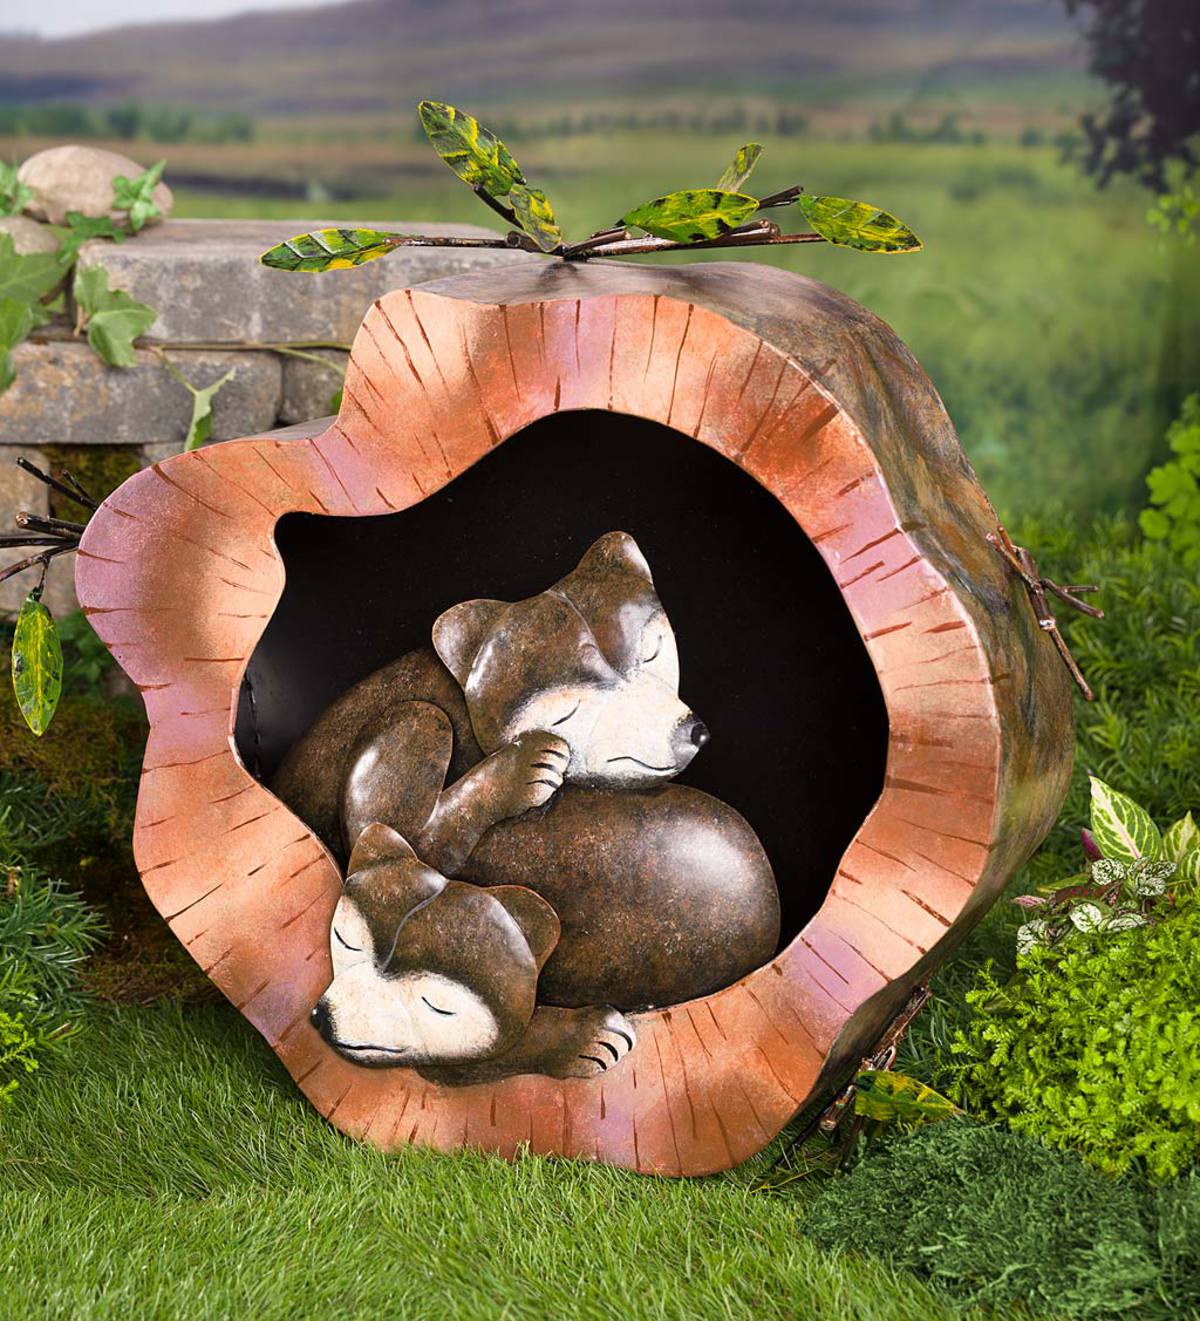 Sleeping Bears in a Log Metal Sculpture